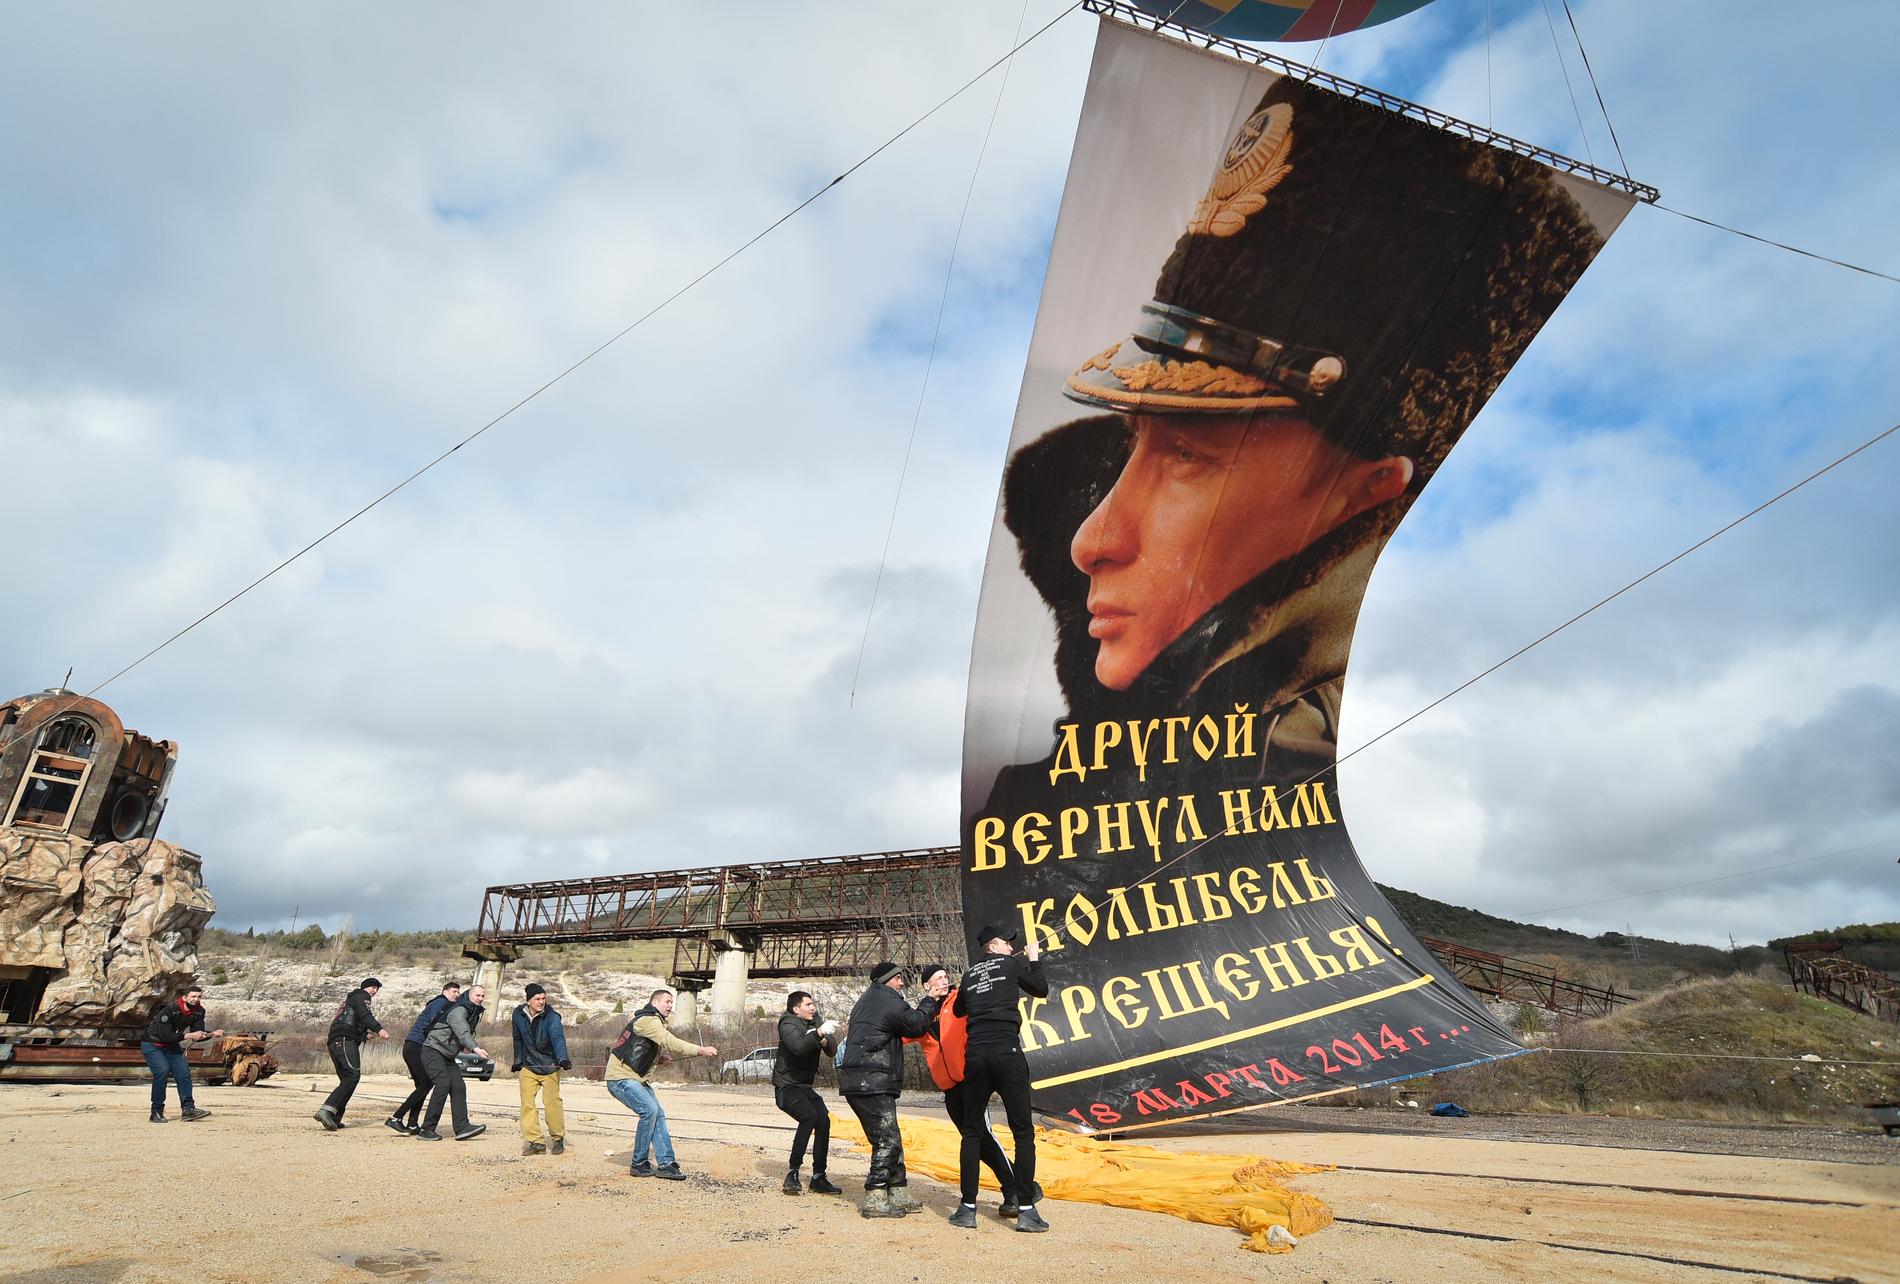 I staden Sevastopol på ukrainska Krimhalvön, monteras en flagga på Rysslands president Vladimir Putin med texten "En annan gav oss åter dopets vagga" på sjuårsdagen av den ryska annekteringen av Krim i mars i år.